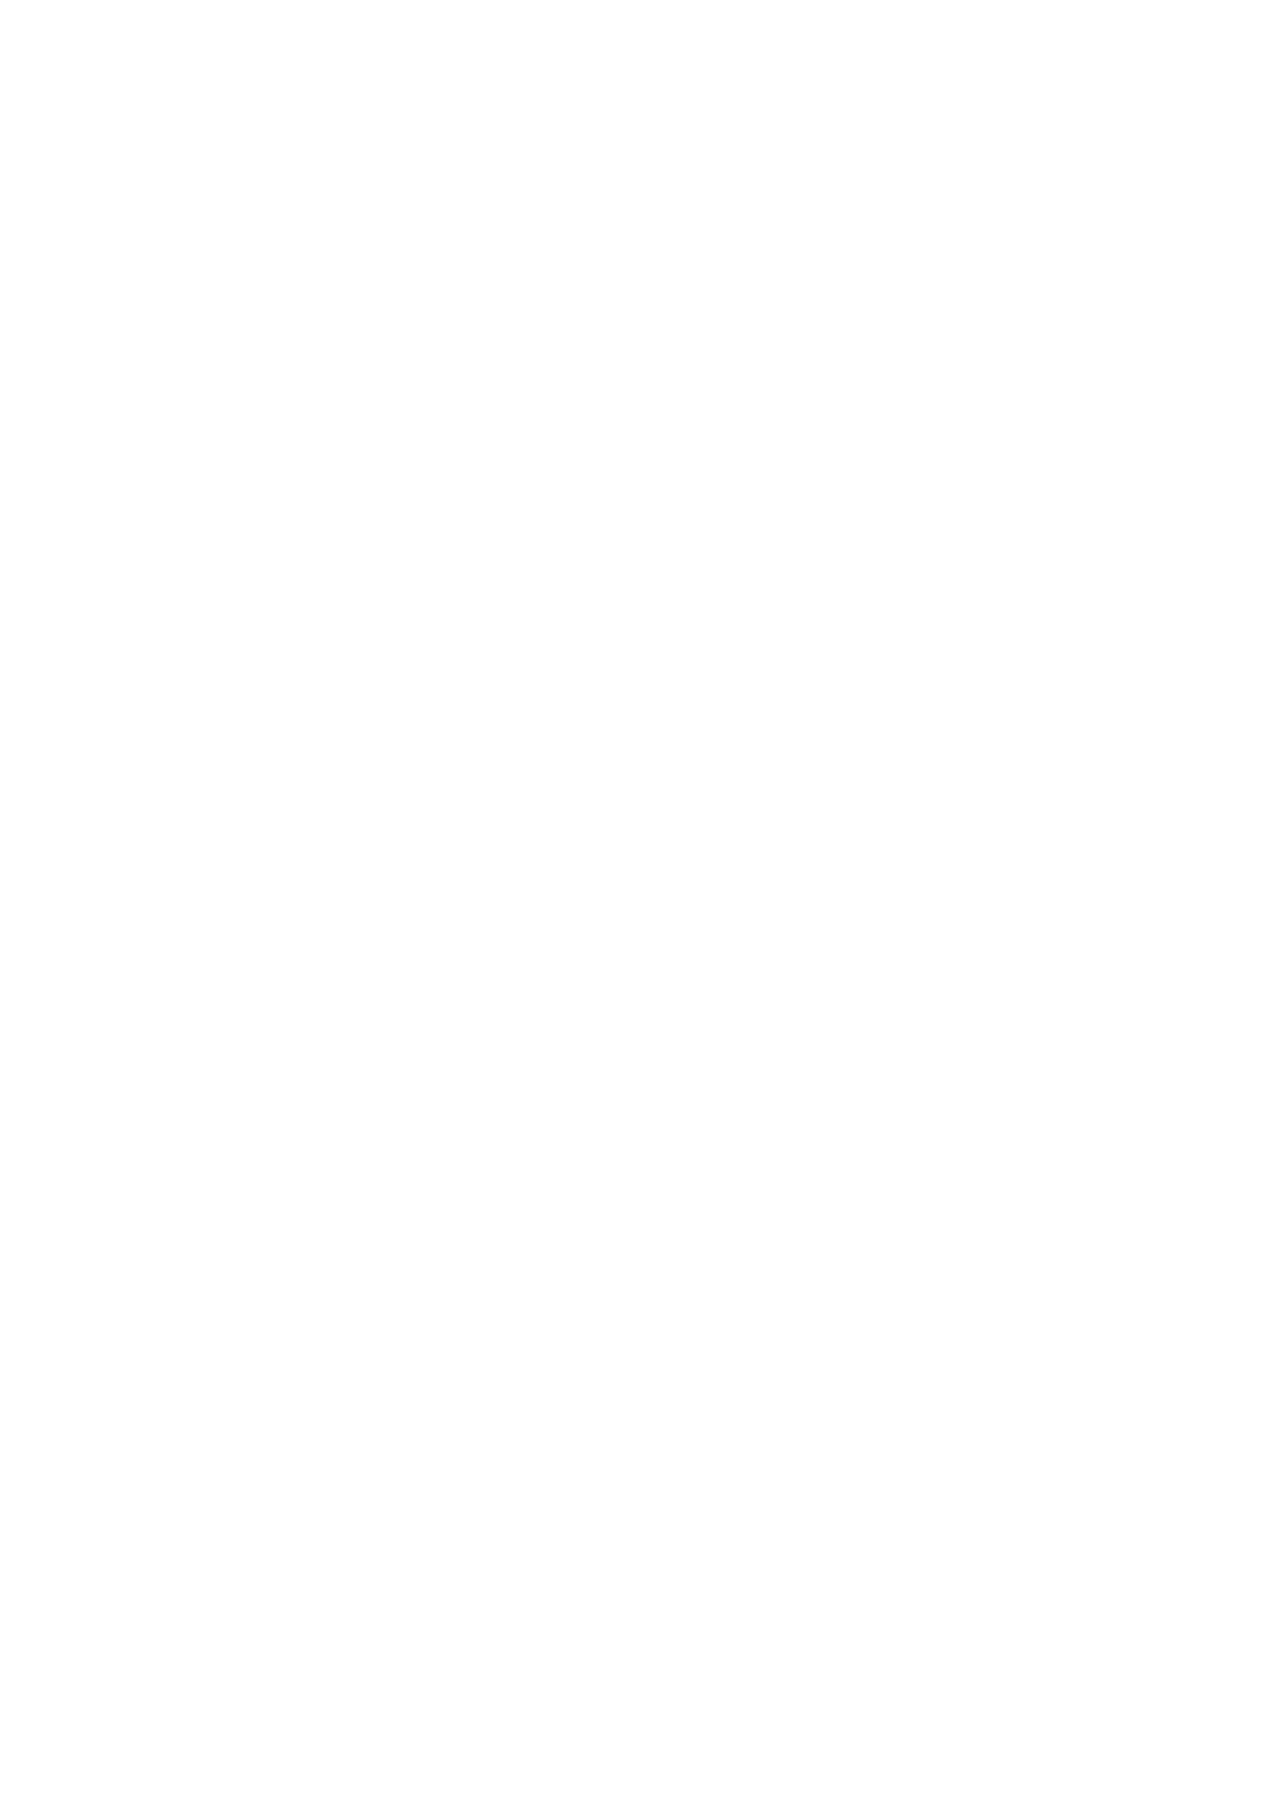 [鬼ノ漫画設計室 (鬼ノ仁)] 大和死ス 1 (艦隊これくしょん -艦これ-) [DL版]